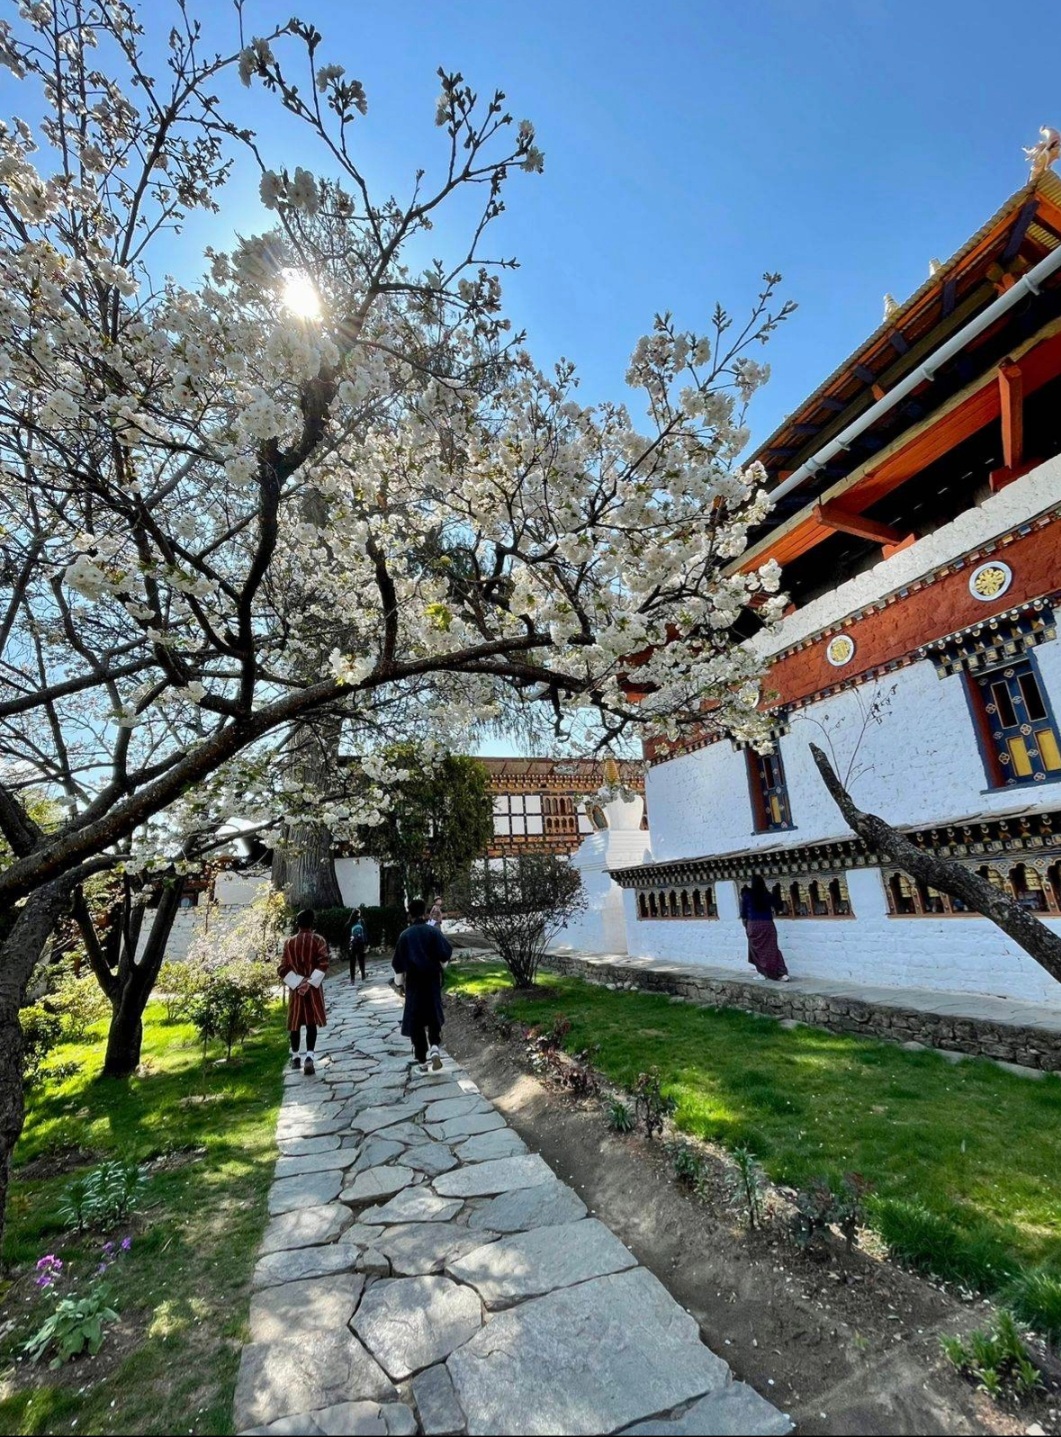 Kyichu Monastery